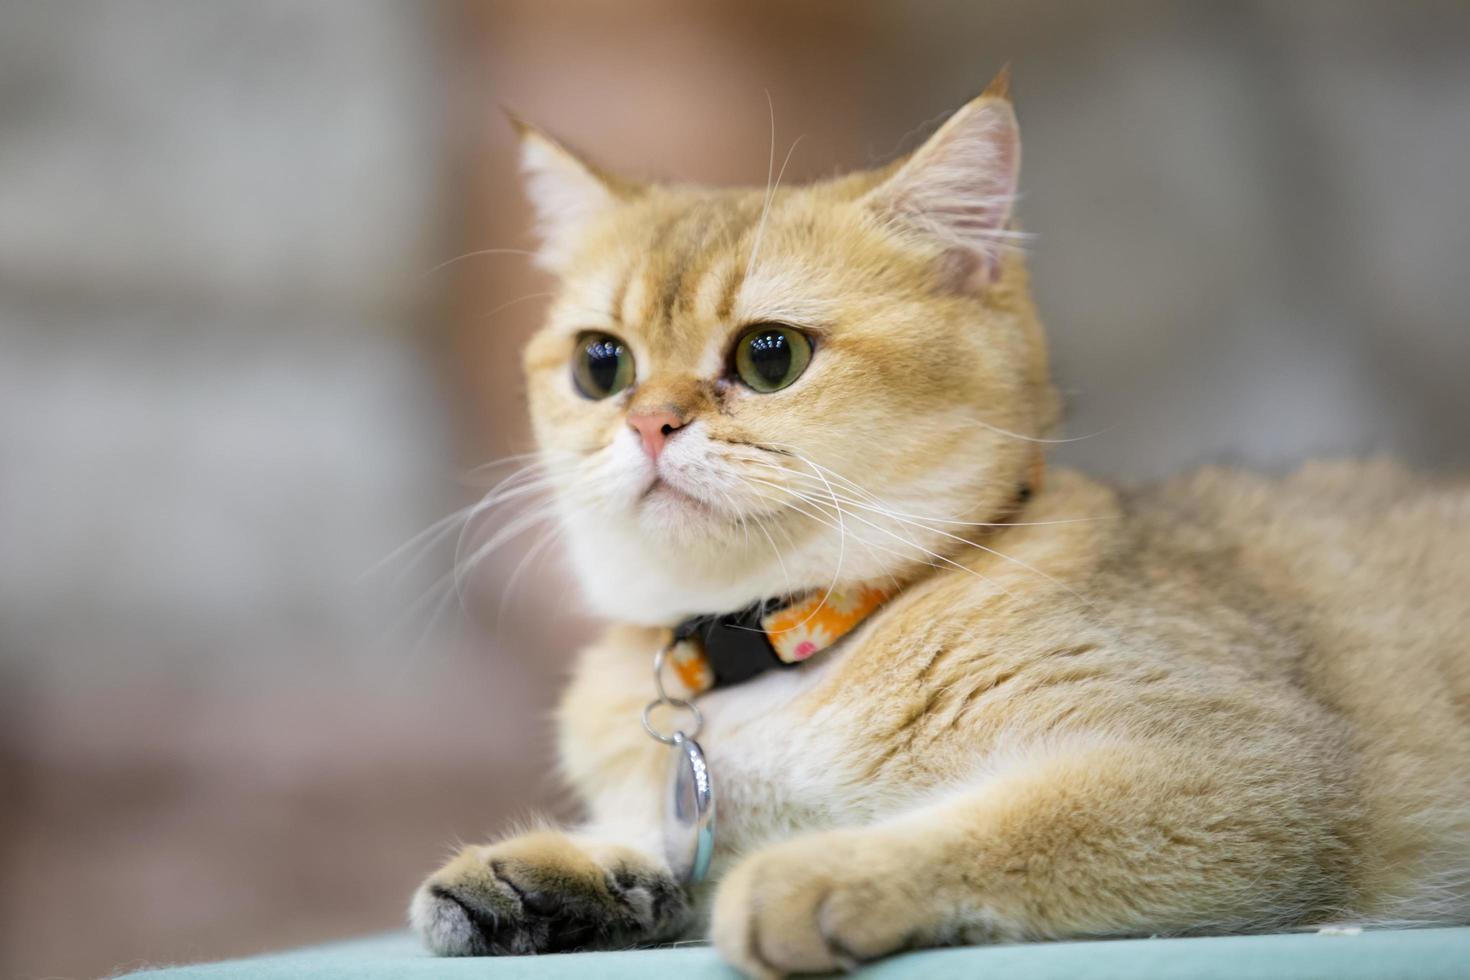 un hermoso gato doméstico descansa en una habitación cálida y luminosa, un gato gris de pelo corto con ojos verdes mirando la cámara foto